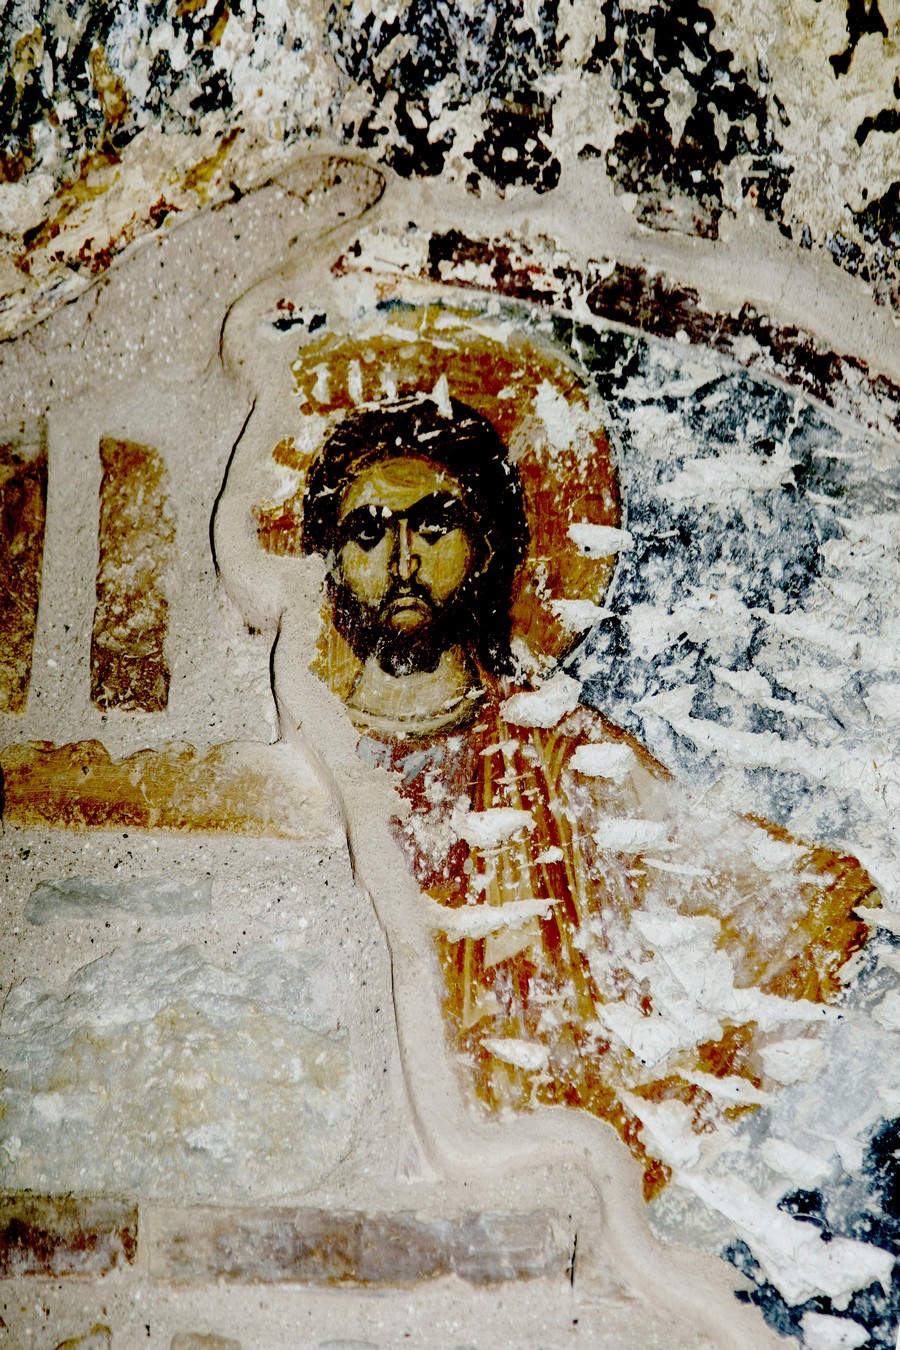 Господь Иисус Христос. Фреска церкви Святого Георгия в Оморфокклисии, Кастория, Греция. 1295 - 1317 годы.